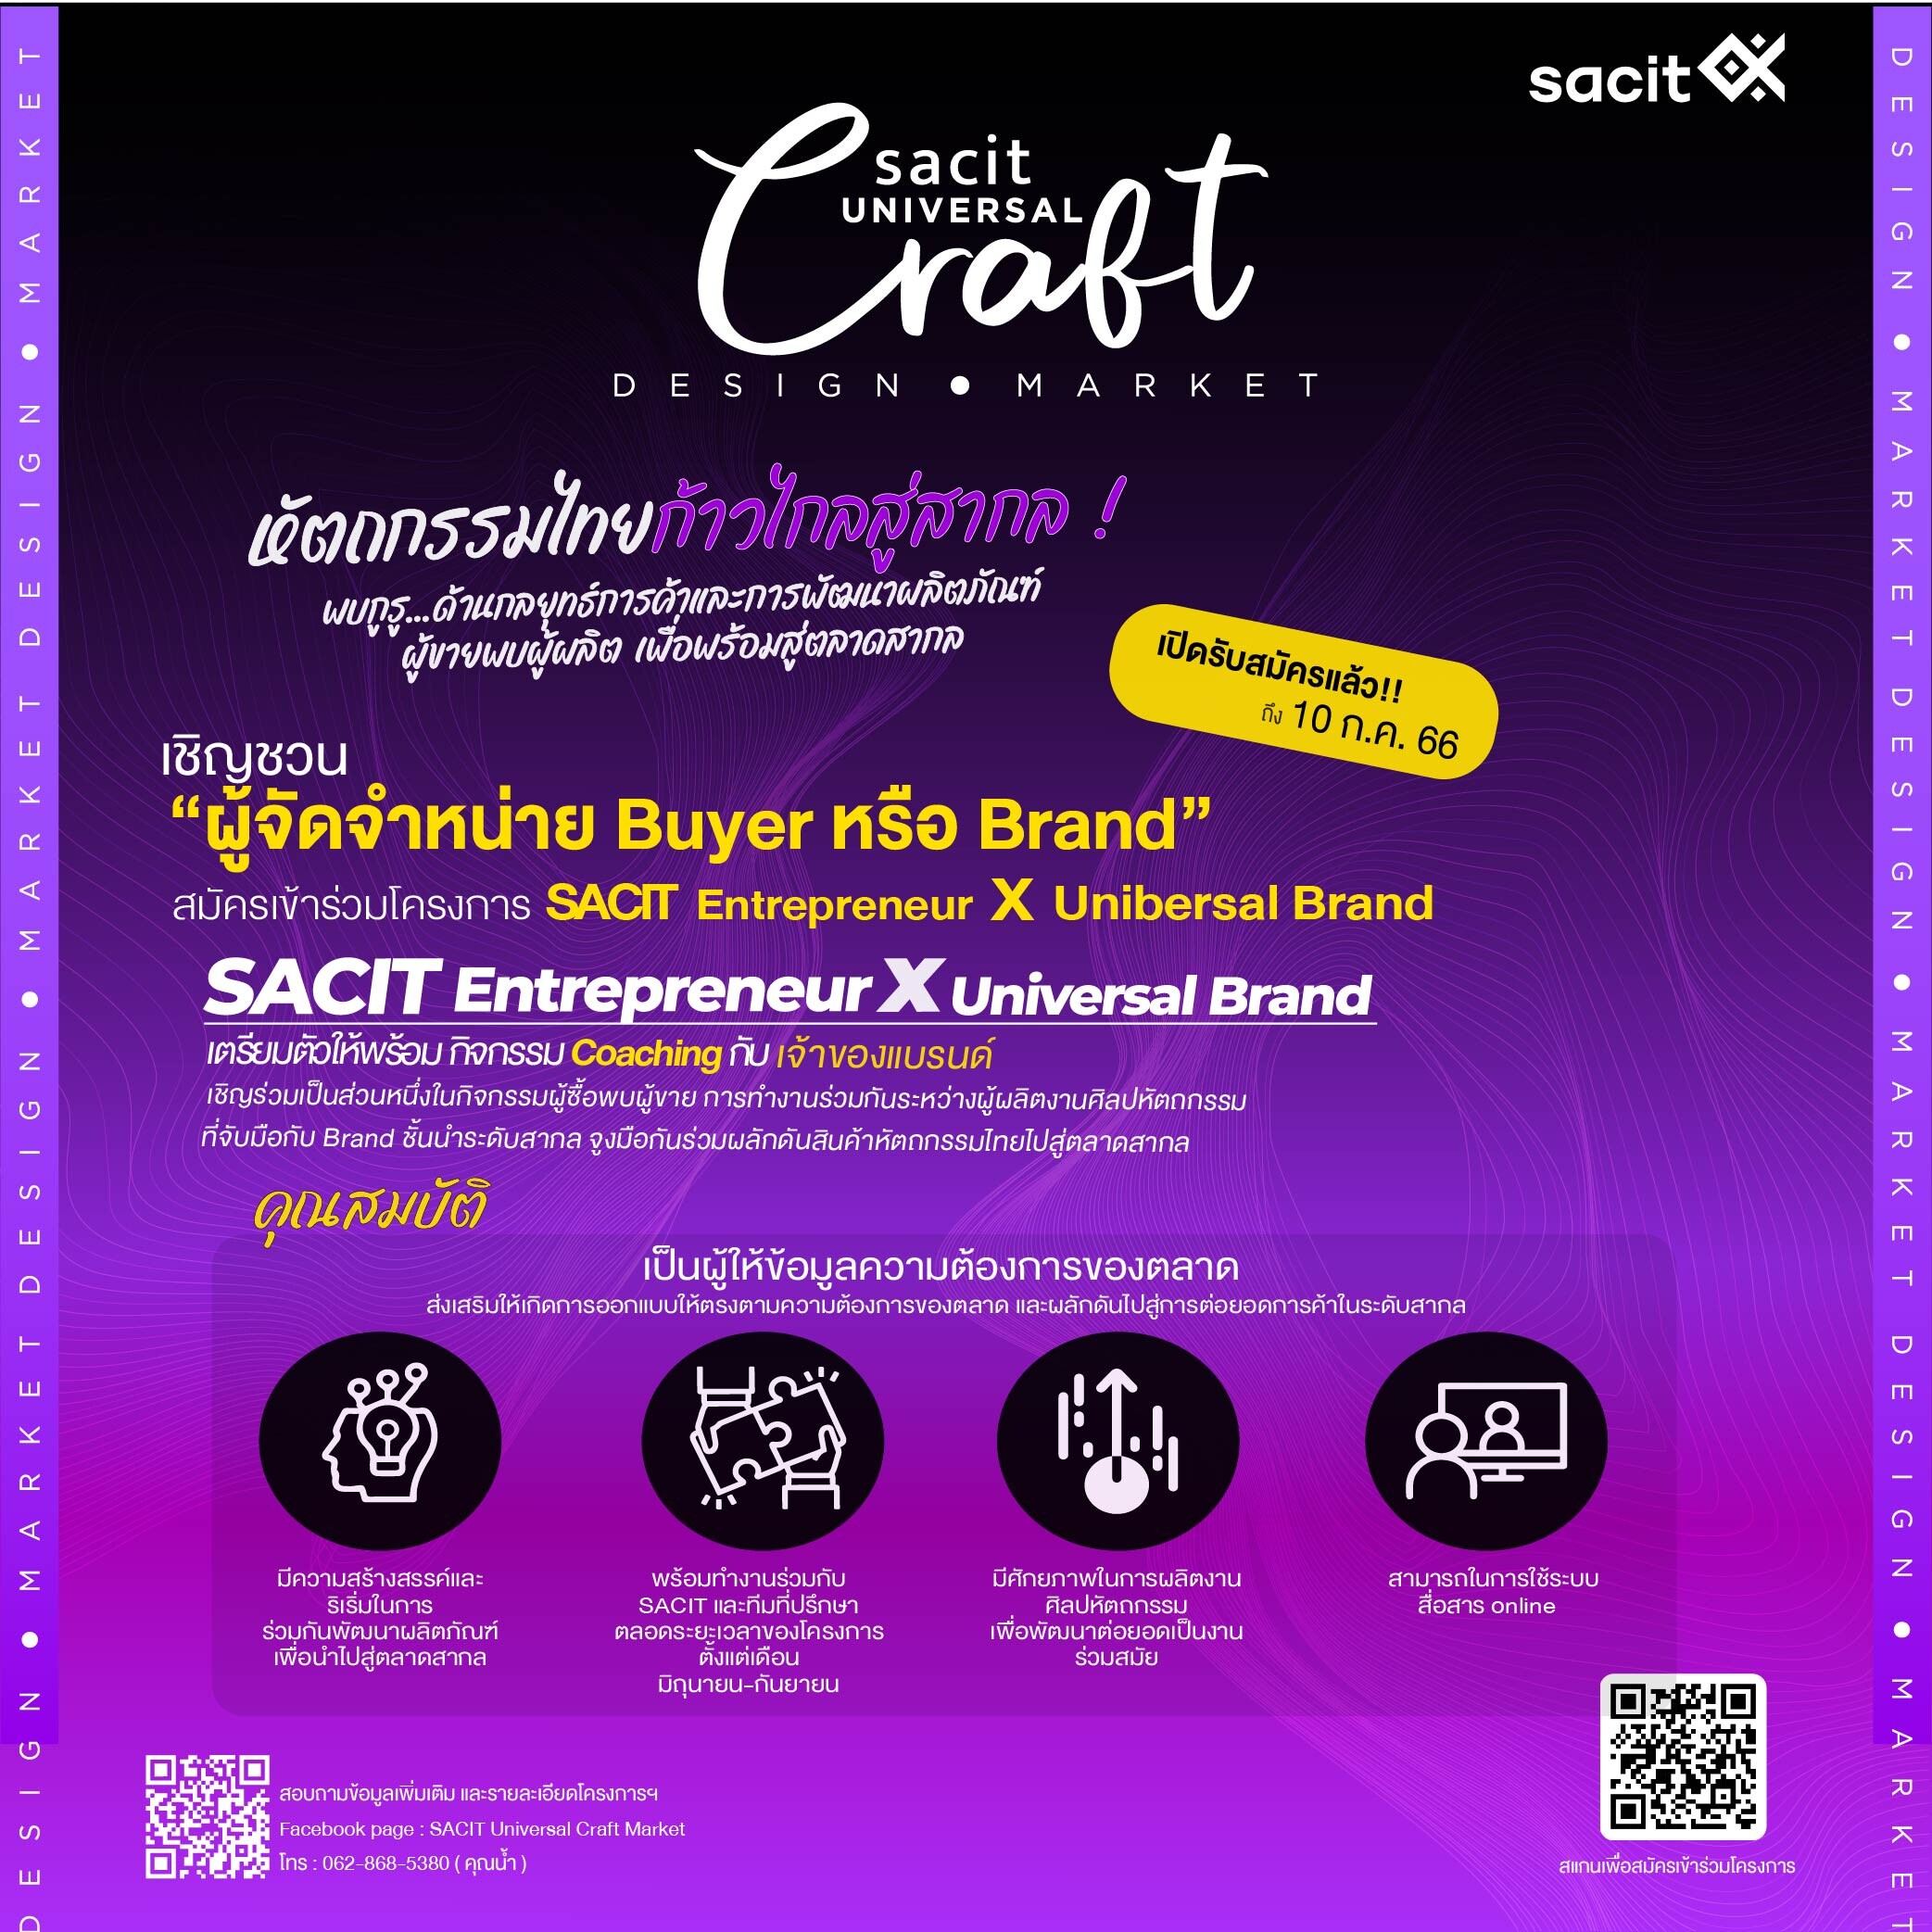 SACIT Universal Craft Market เชิญชวนผู้จัดจำหน่ายเข้าเป็นส่วนหนึ่งในโครงการพัฒนารูปแบบผลิตภัณฑ์เพื่อตลาดสากล